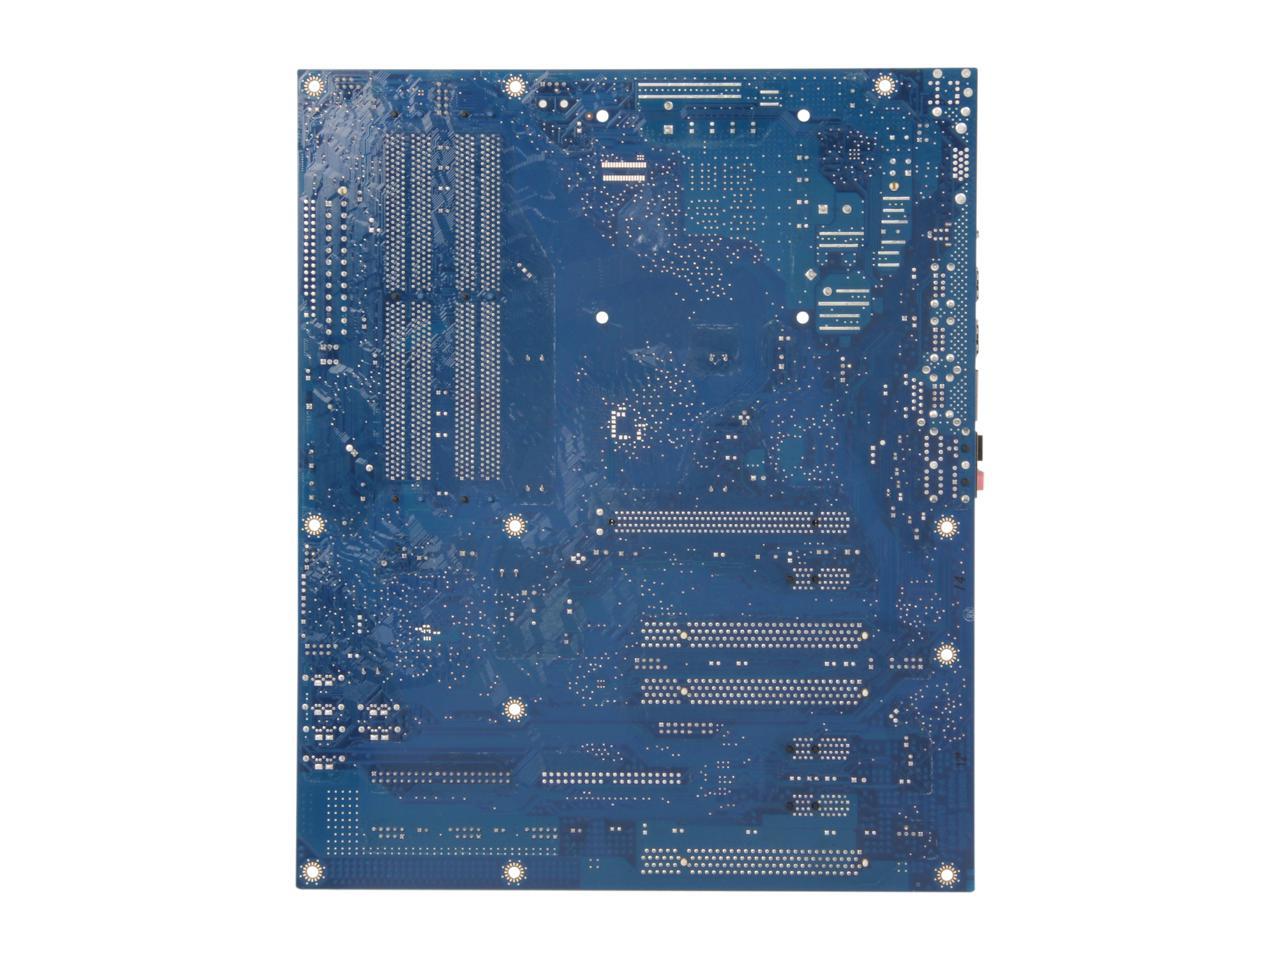 Refurbished: Intel BLKDP35DPM LGA 775 ATX Intel Motherboard - Newegg.com